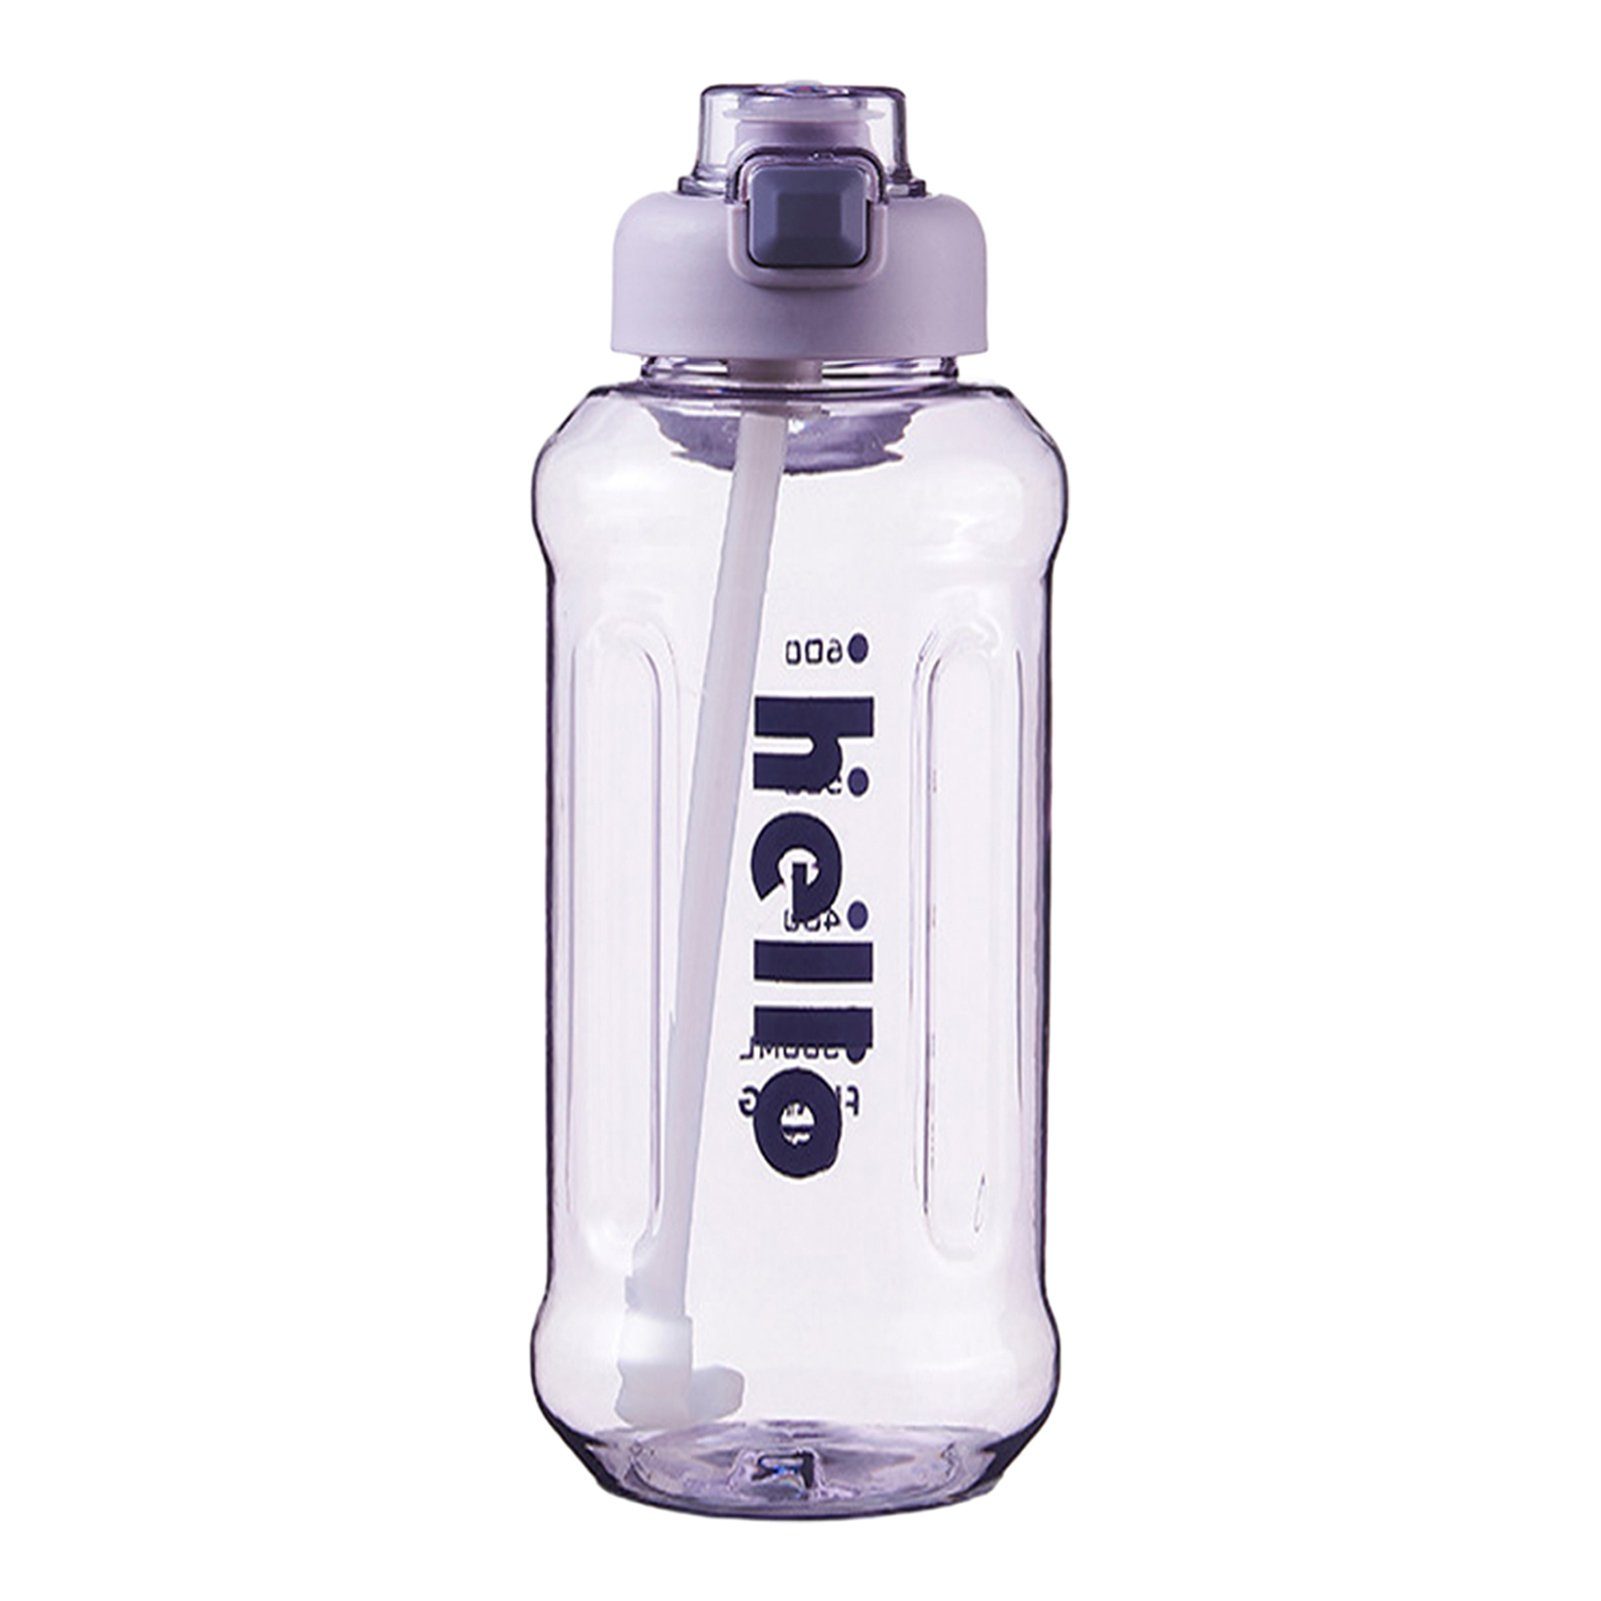 purple Trinkflasche Tragbarer Kapazität, Versiegelter, 1300ml Trinkflasche Griff, Stroh-Wasserbecher Mit Blusmart Hoher